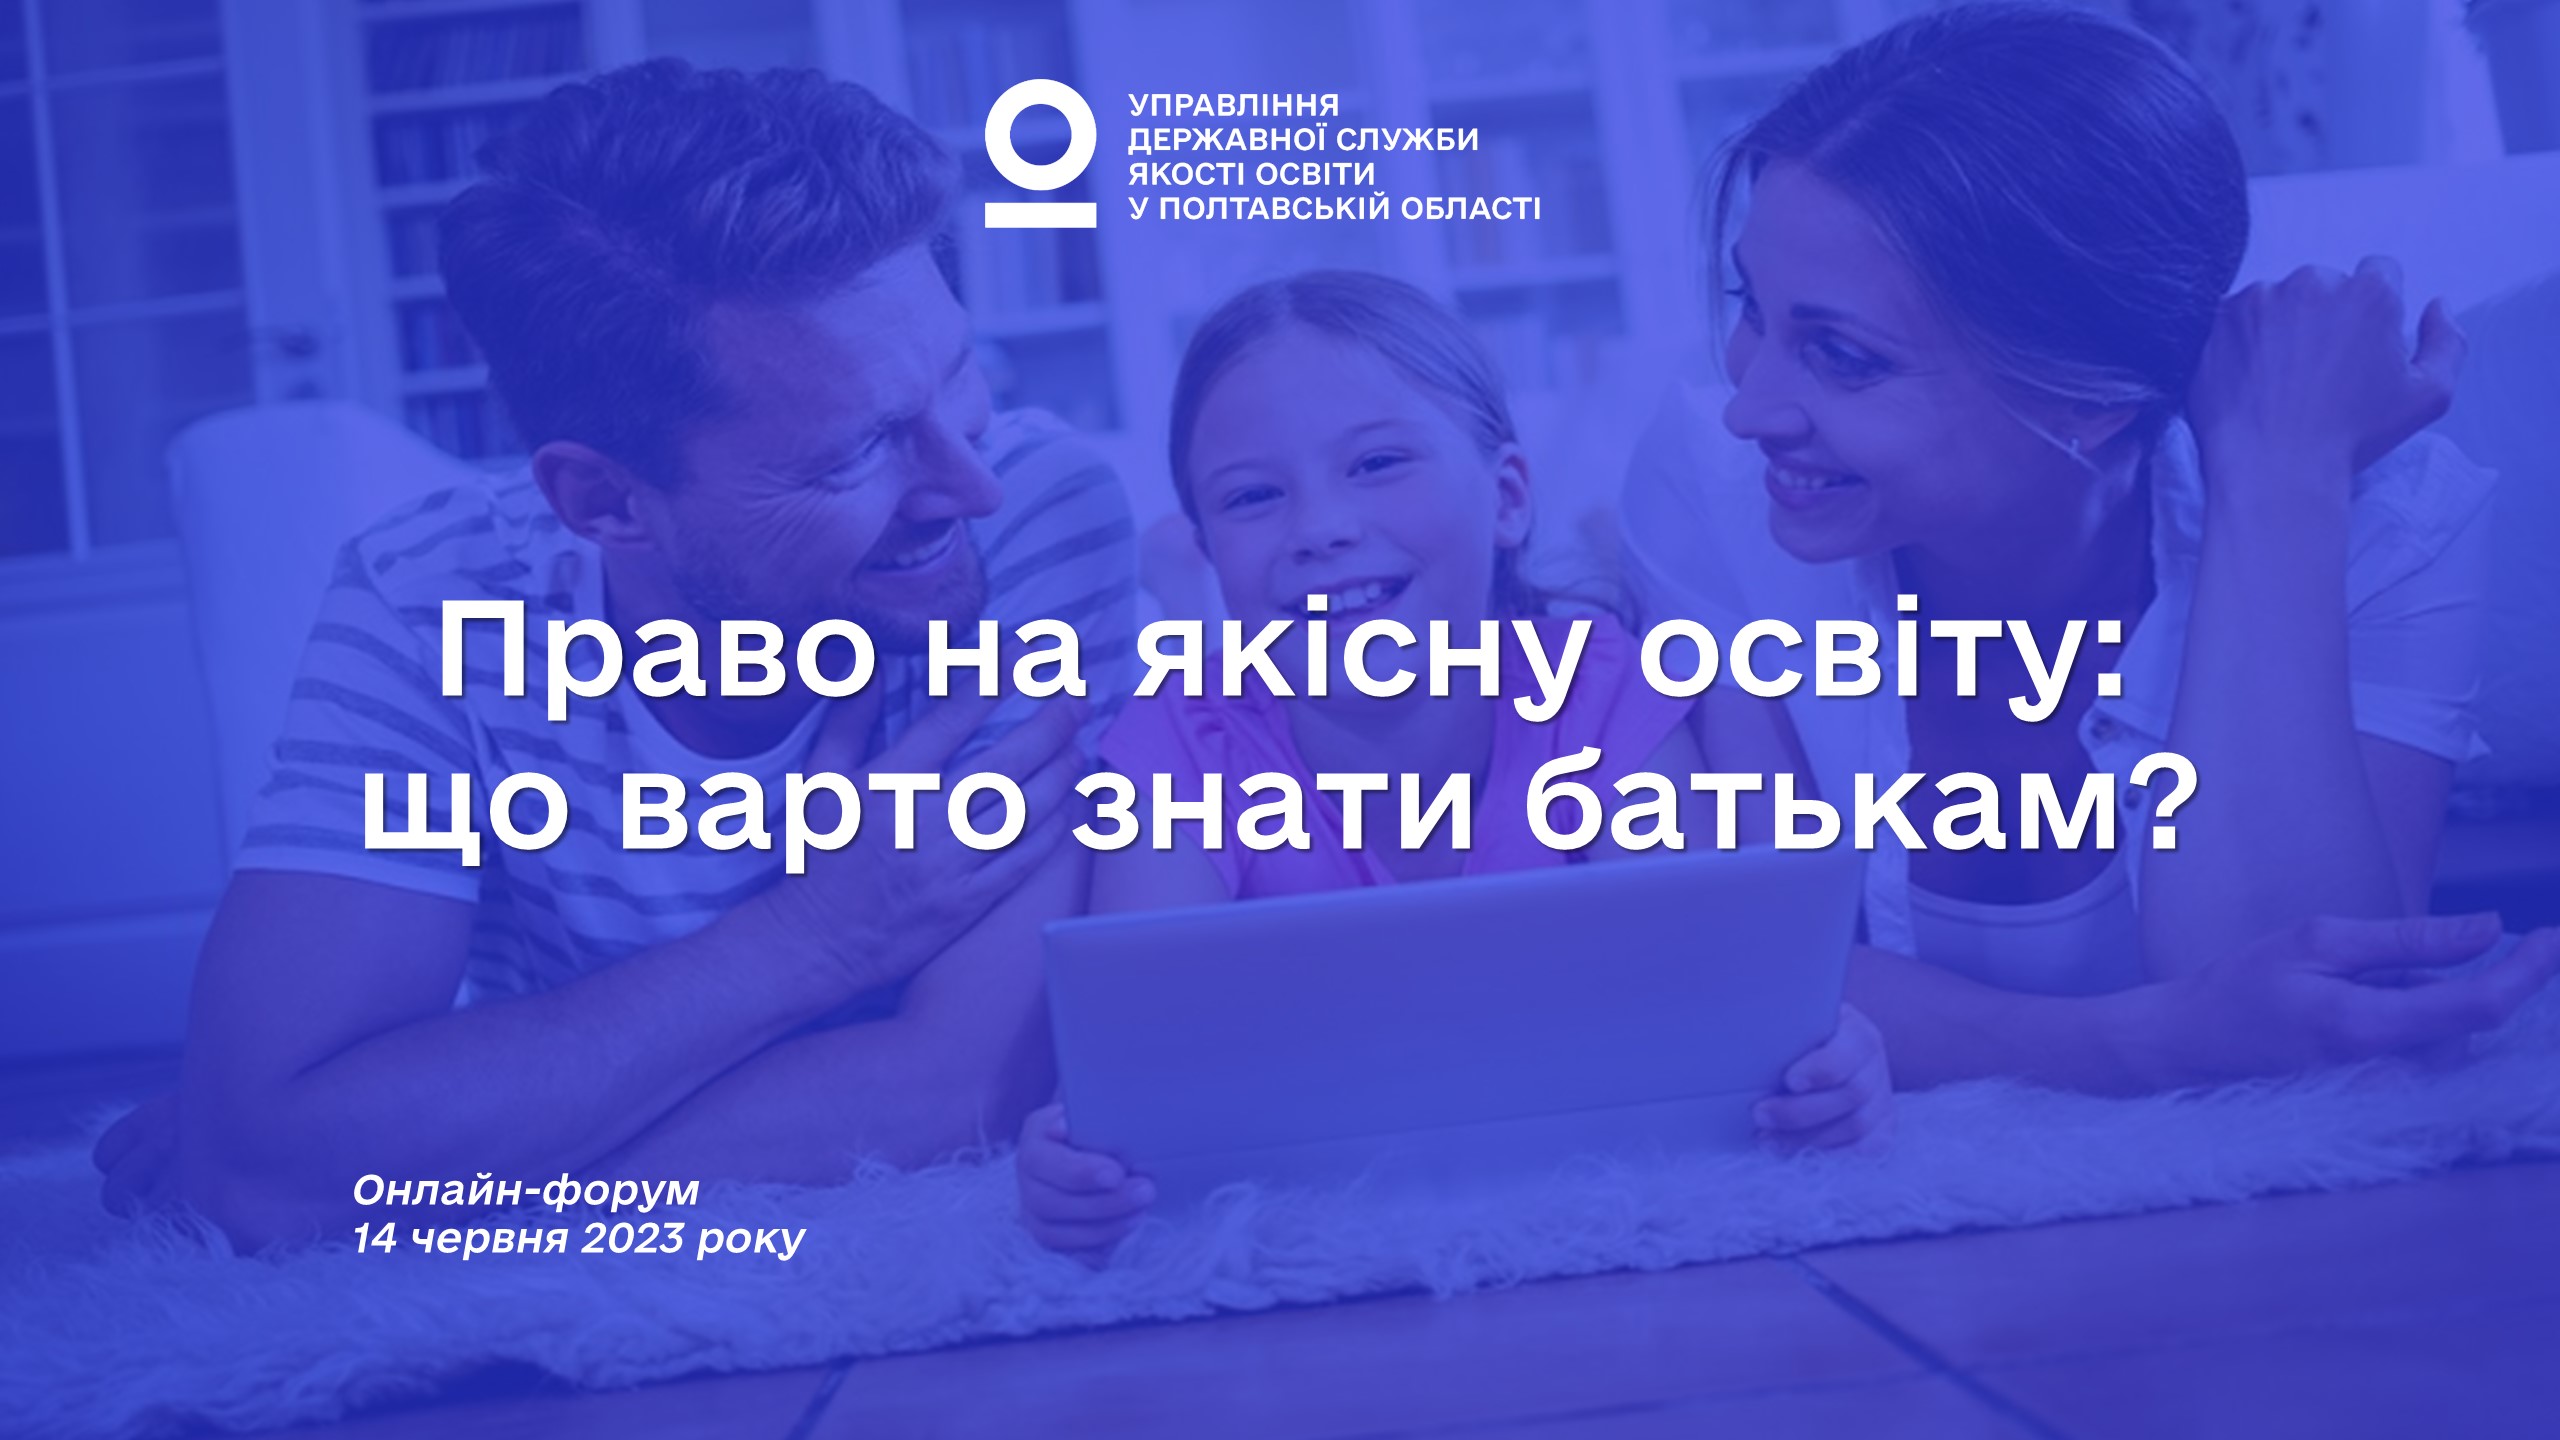 «Право на якісну освіту: що варто знати батькам?» онлайн-форум для батьківства Полтавської області 